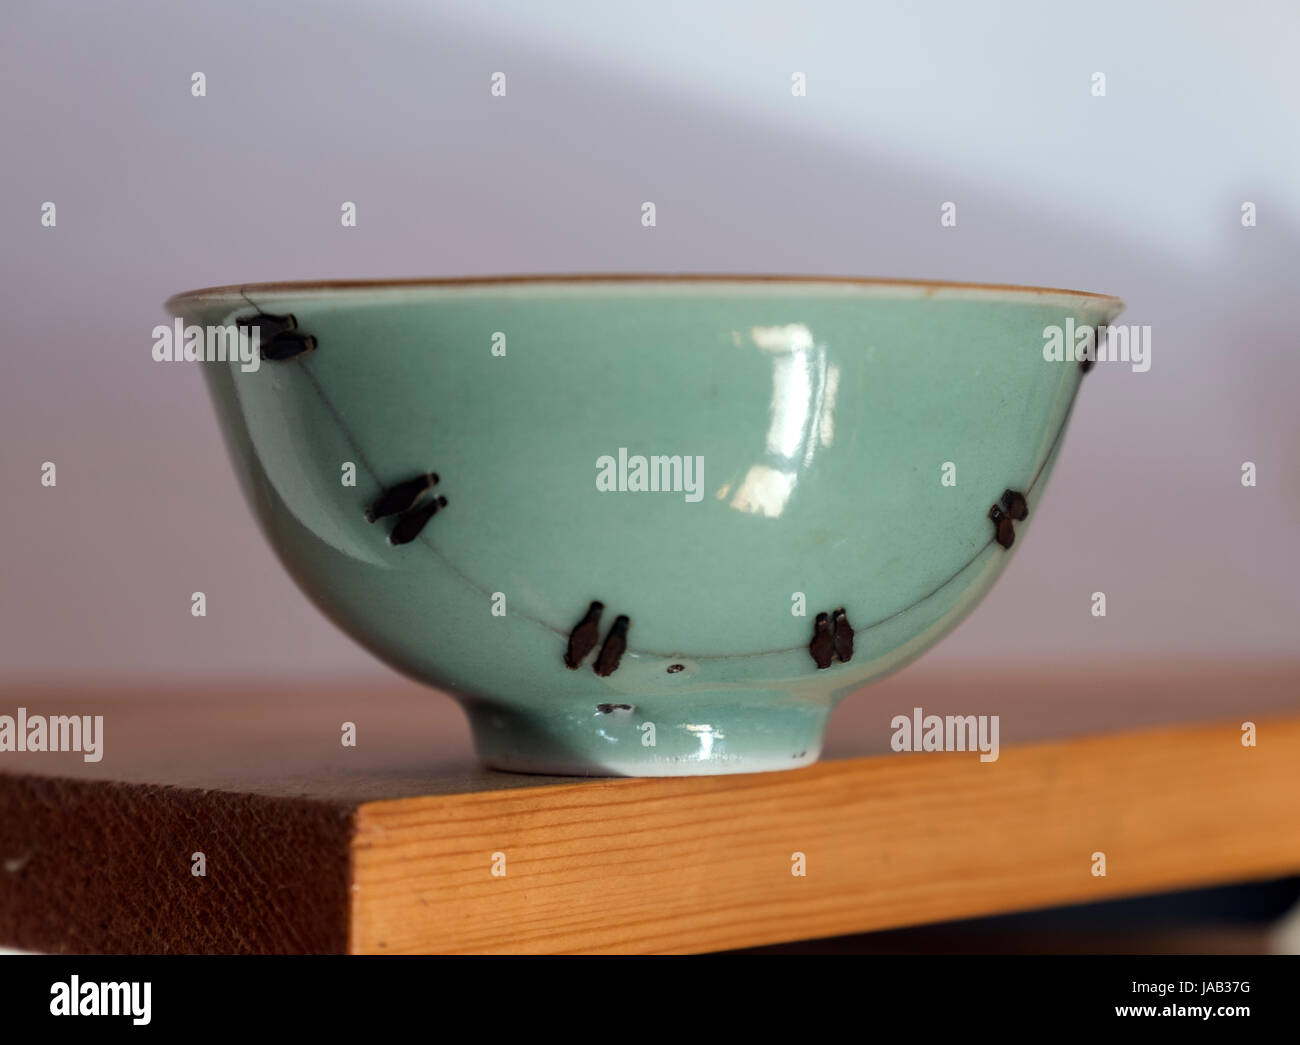 La rottura di un vaso di porcellana dalla Dinastia Qing (1644-1912) era stato riparato saldamente con il cinese tradizionale Ju Ci artigianato. Foto Stock